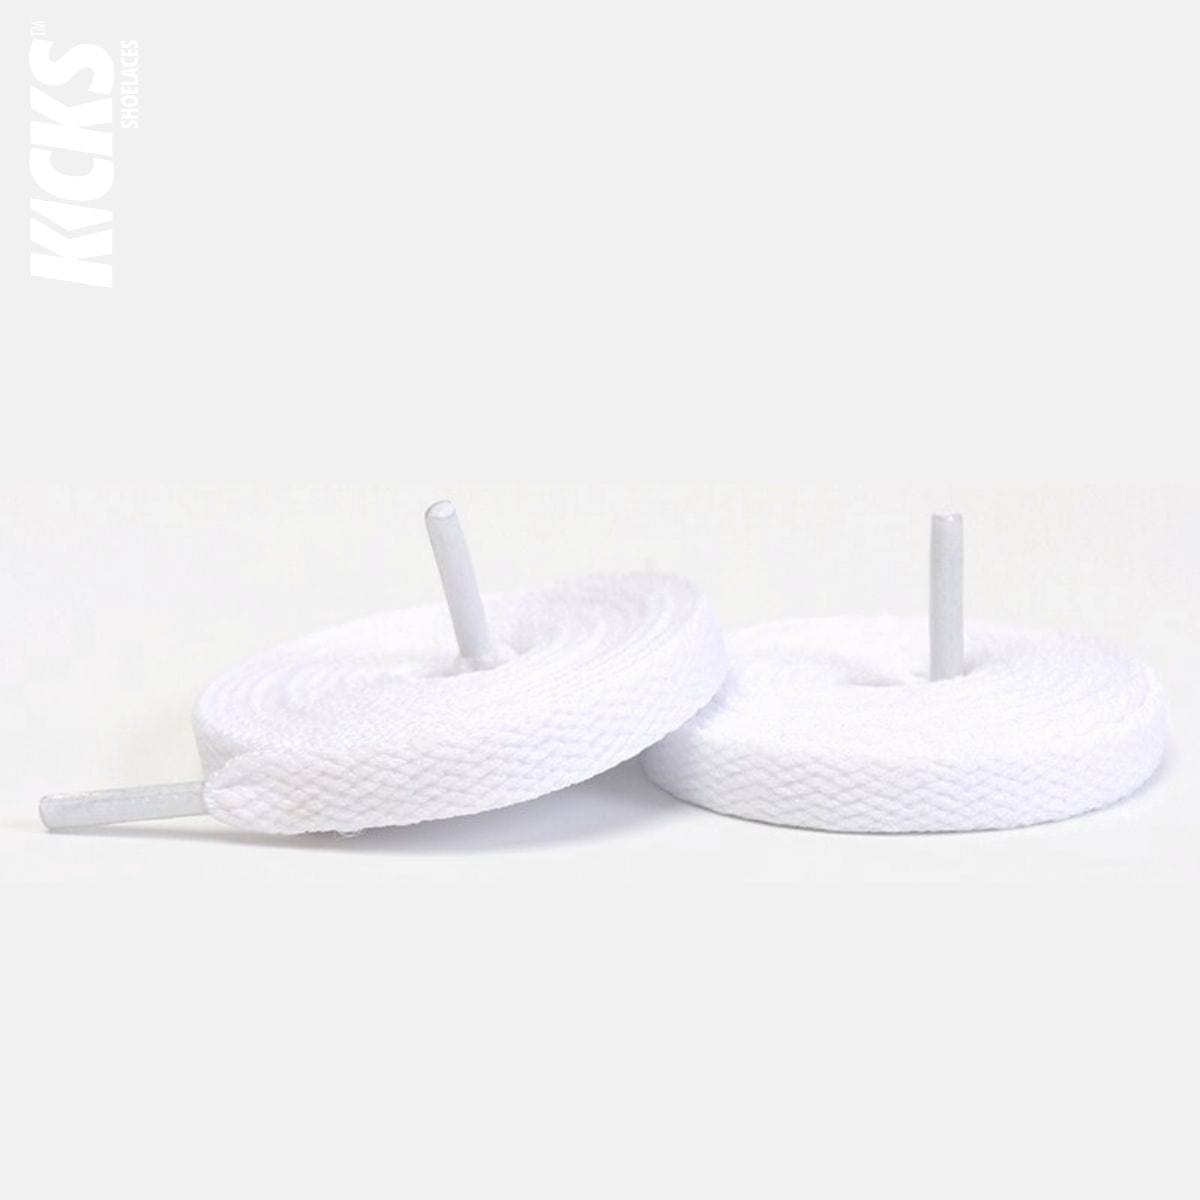 Nike Cortez Replacement Shoelaces - Kicks Shoelaces